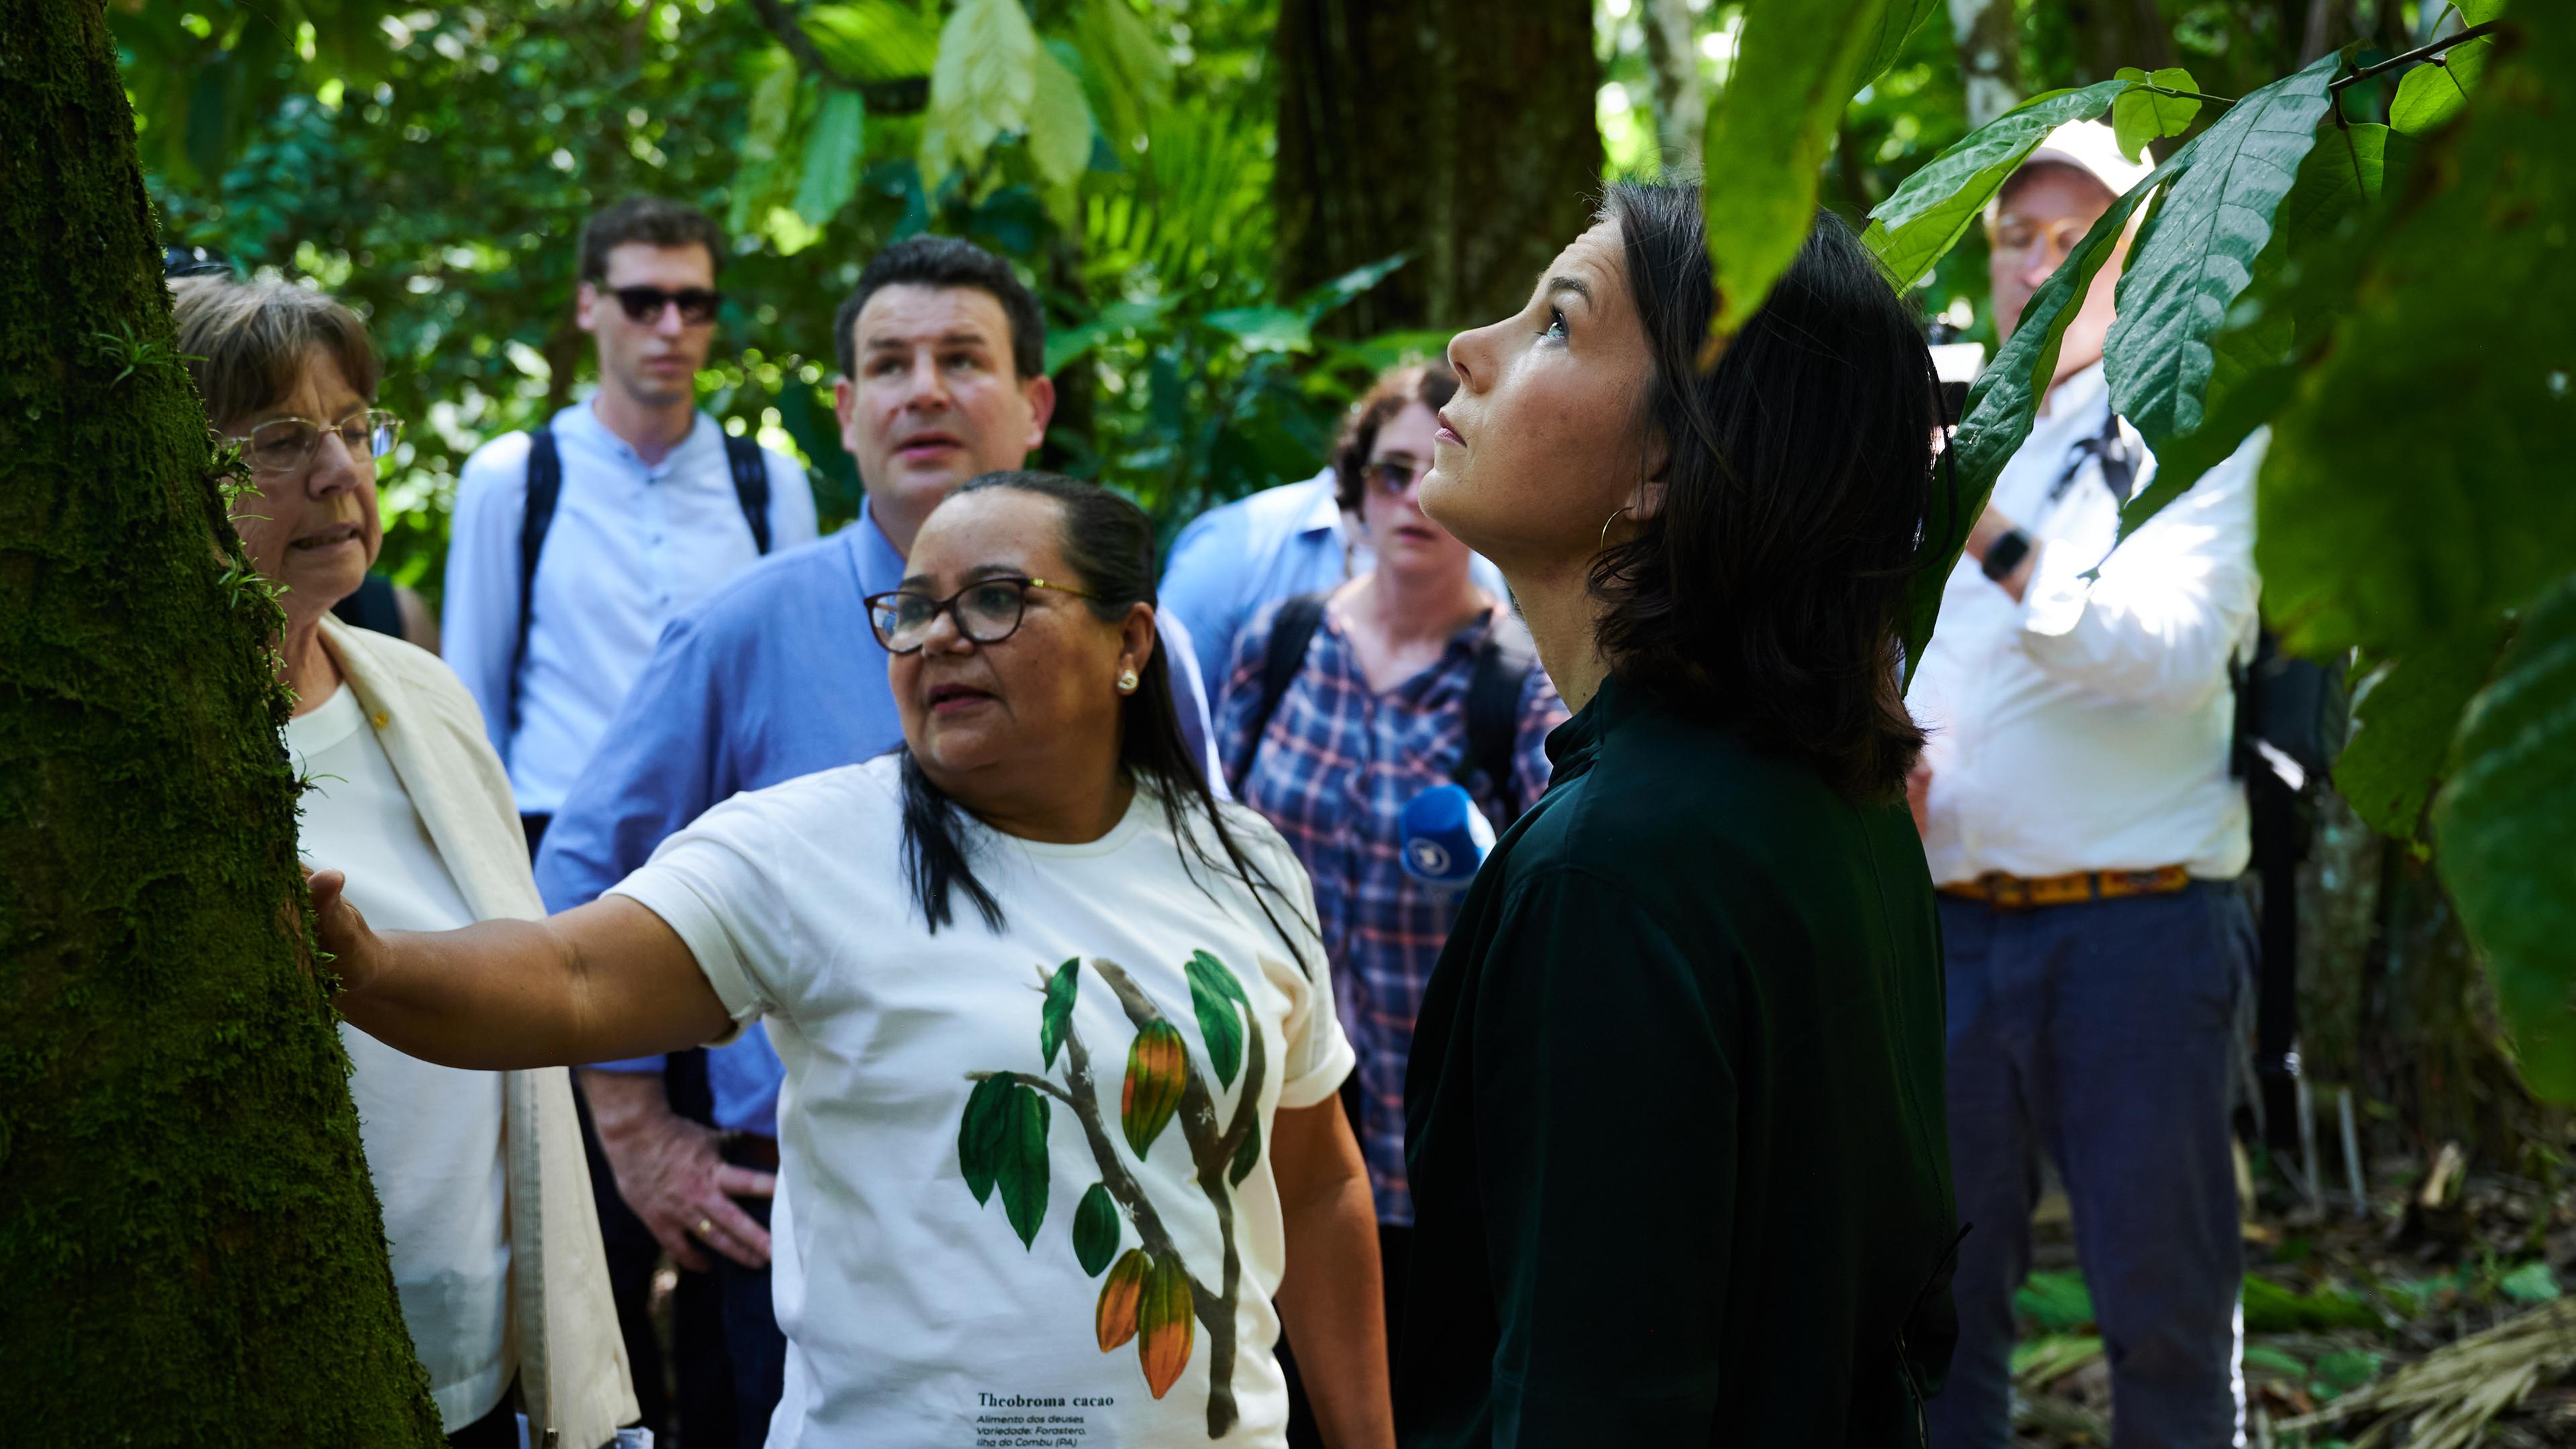 Annalena Baerbock (r, Bündnis 90/Die Grünen), Außenministerin und Hubertus Heil (M hinten, SPD), Minister für Arbeit und Soziales, besuchen den Regenwald auf der Insel Combu (Ilha do Combu) bei Belem, Brasilien, während sie mit Vertretern von lokalen Initiativen sprechen.